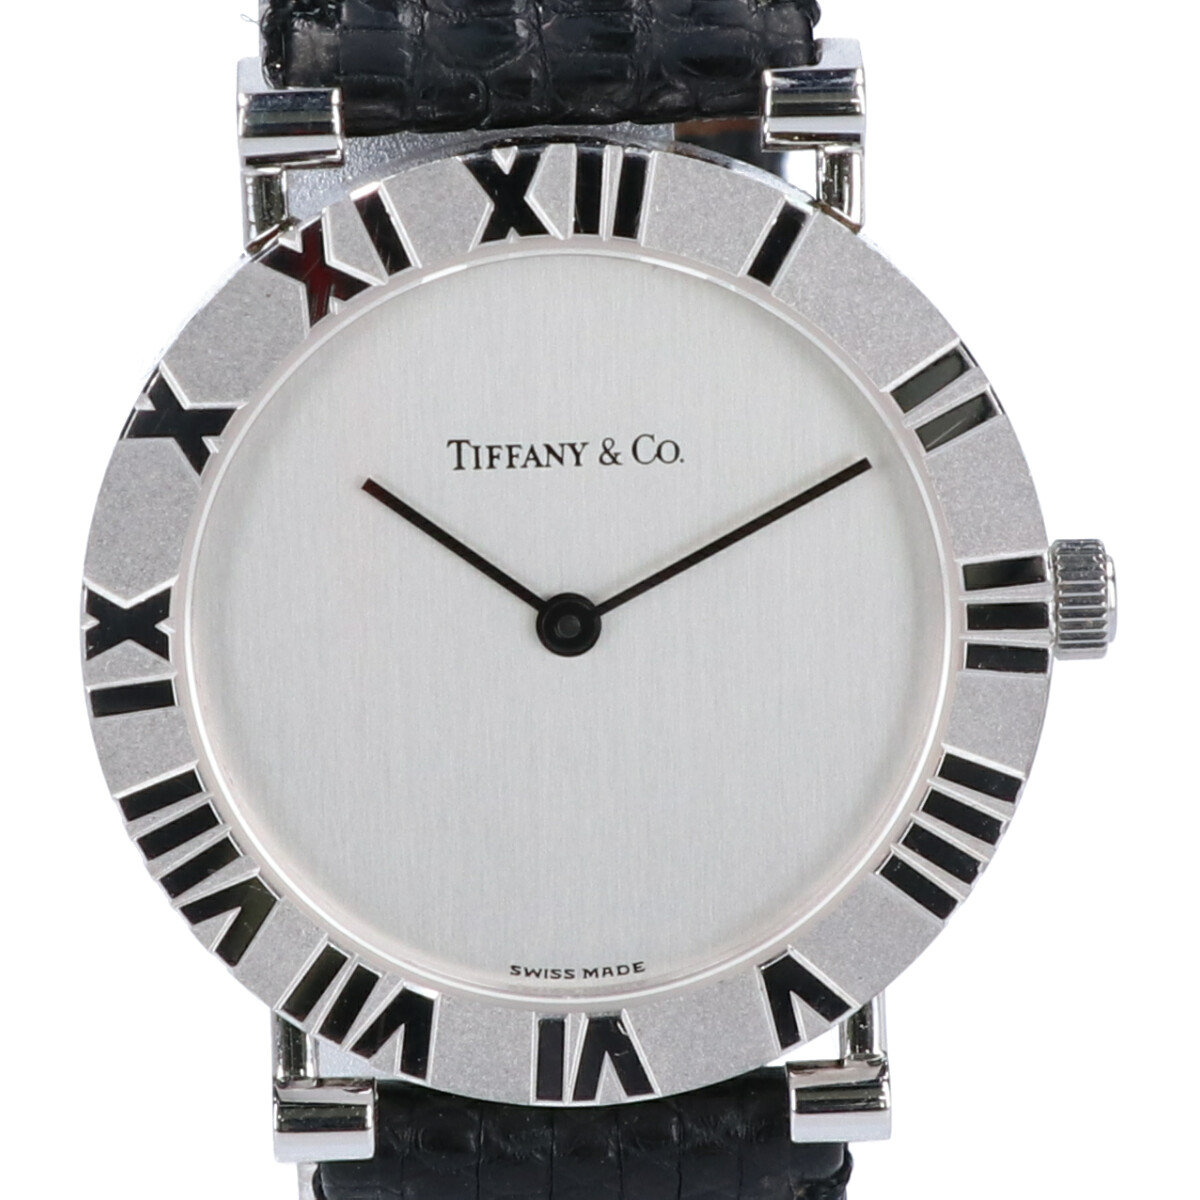 ティファニーのM0640 アトラスウォッチ クオーツ時計の買取実績です。